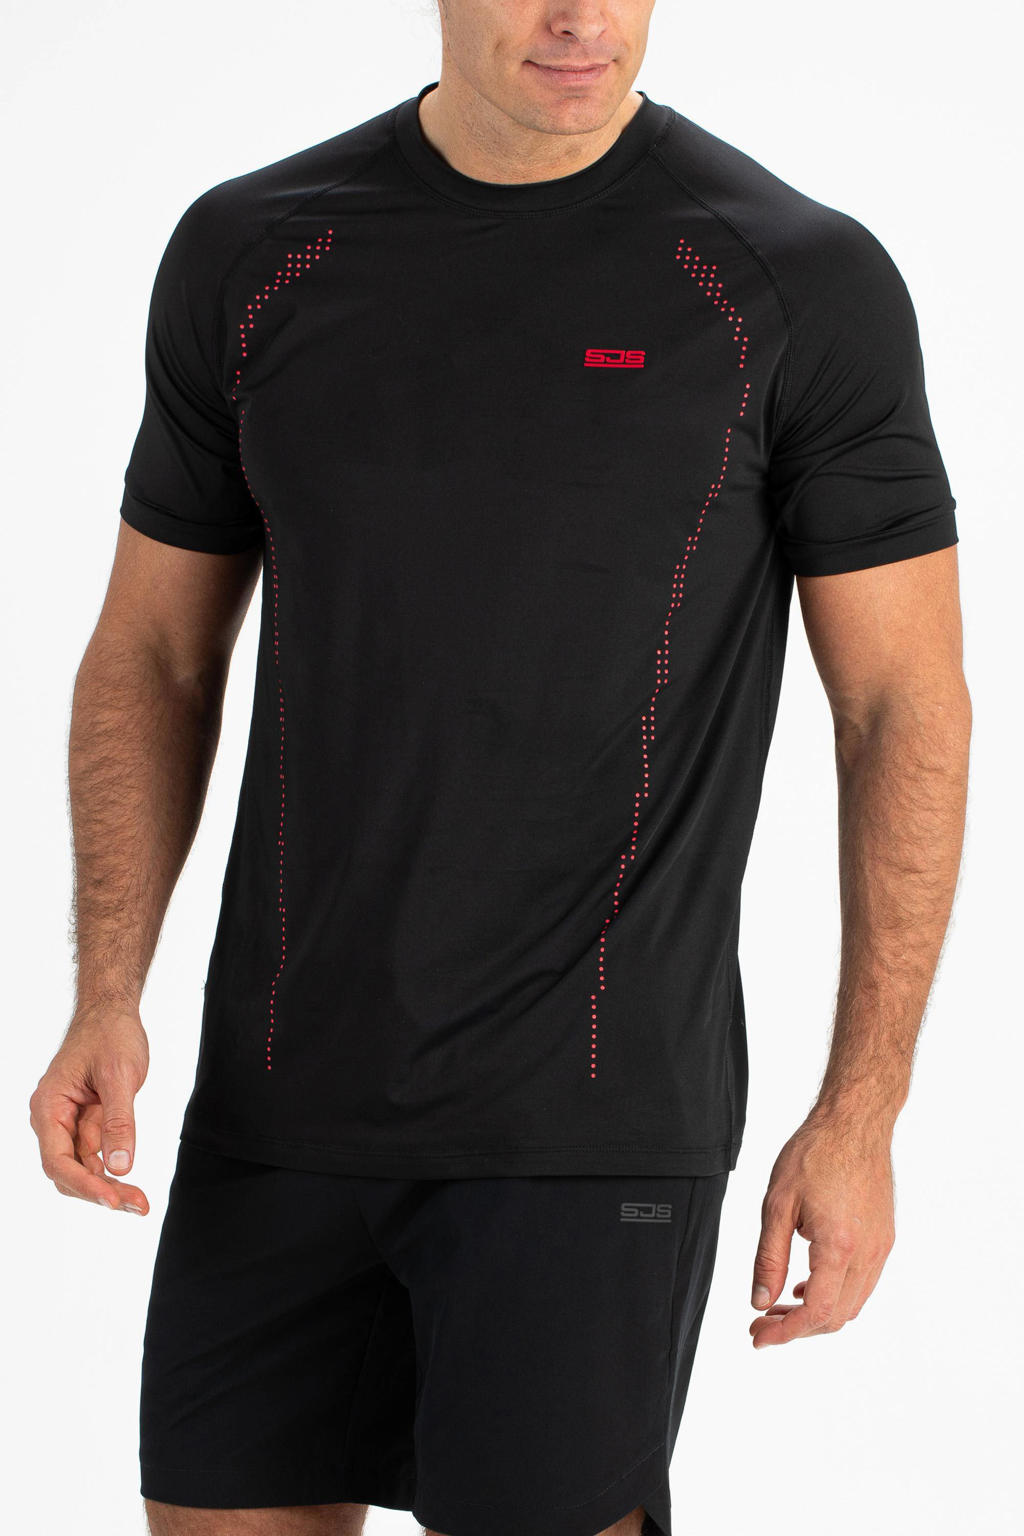 Zwarte heren Sjeng Sports sport T-shirt Torres van polyester met korte mouwen en ronde hals